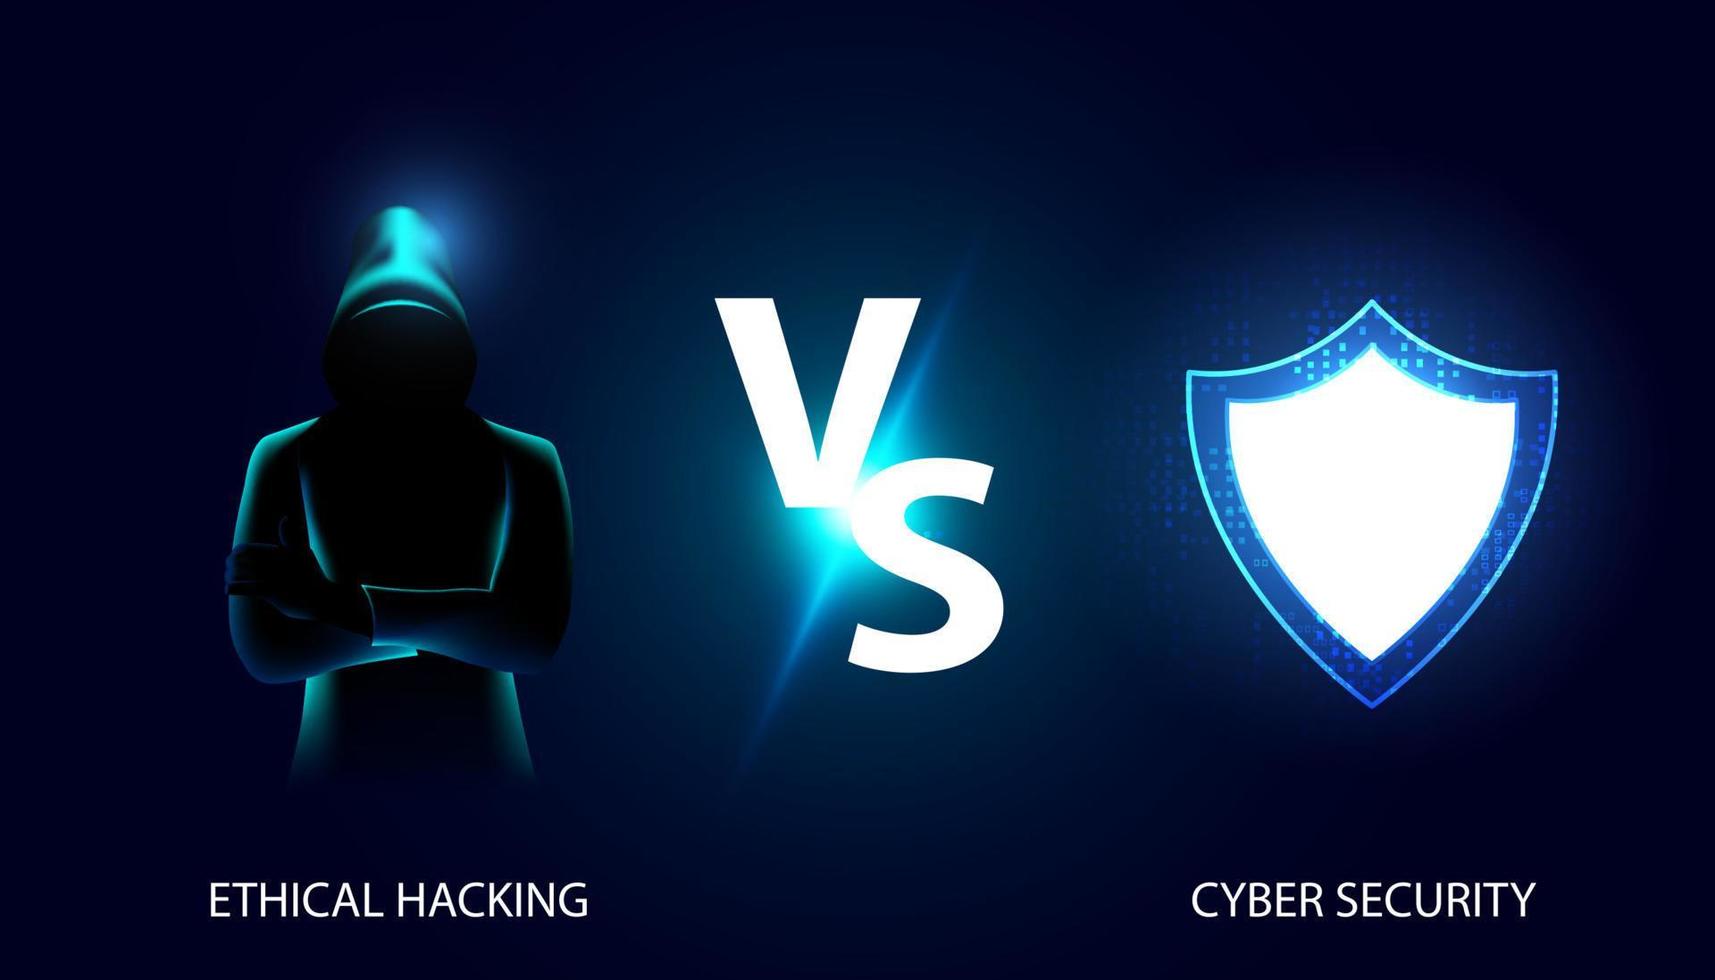 abstraktes Mesh-Hacker- und Schild-Cybersicherheitskonzept vs. Vergleich zwischen ethischem Hacking, ethischem Angriff, White-Hat-Hacking und System auf schönem blauem Hintergrund, digital, futuristisch, modern vektor